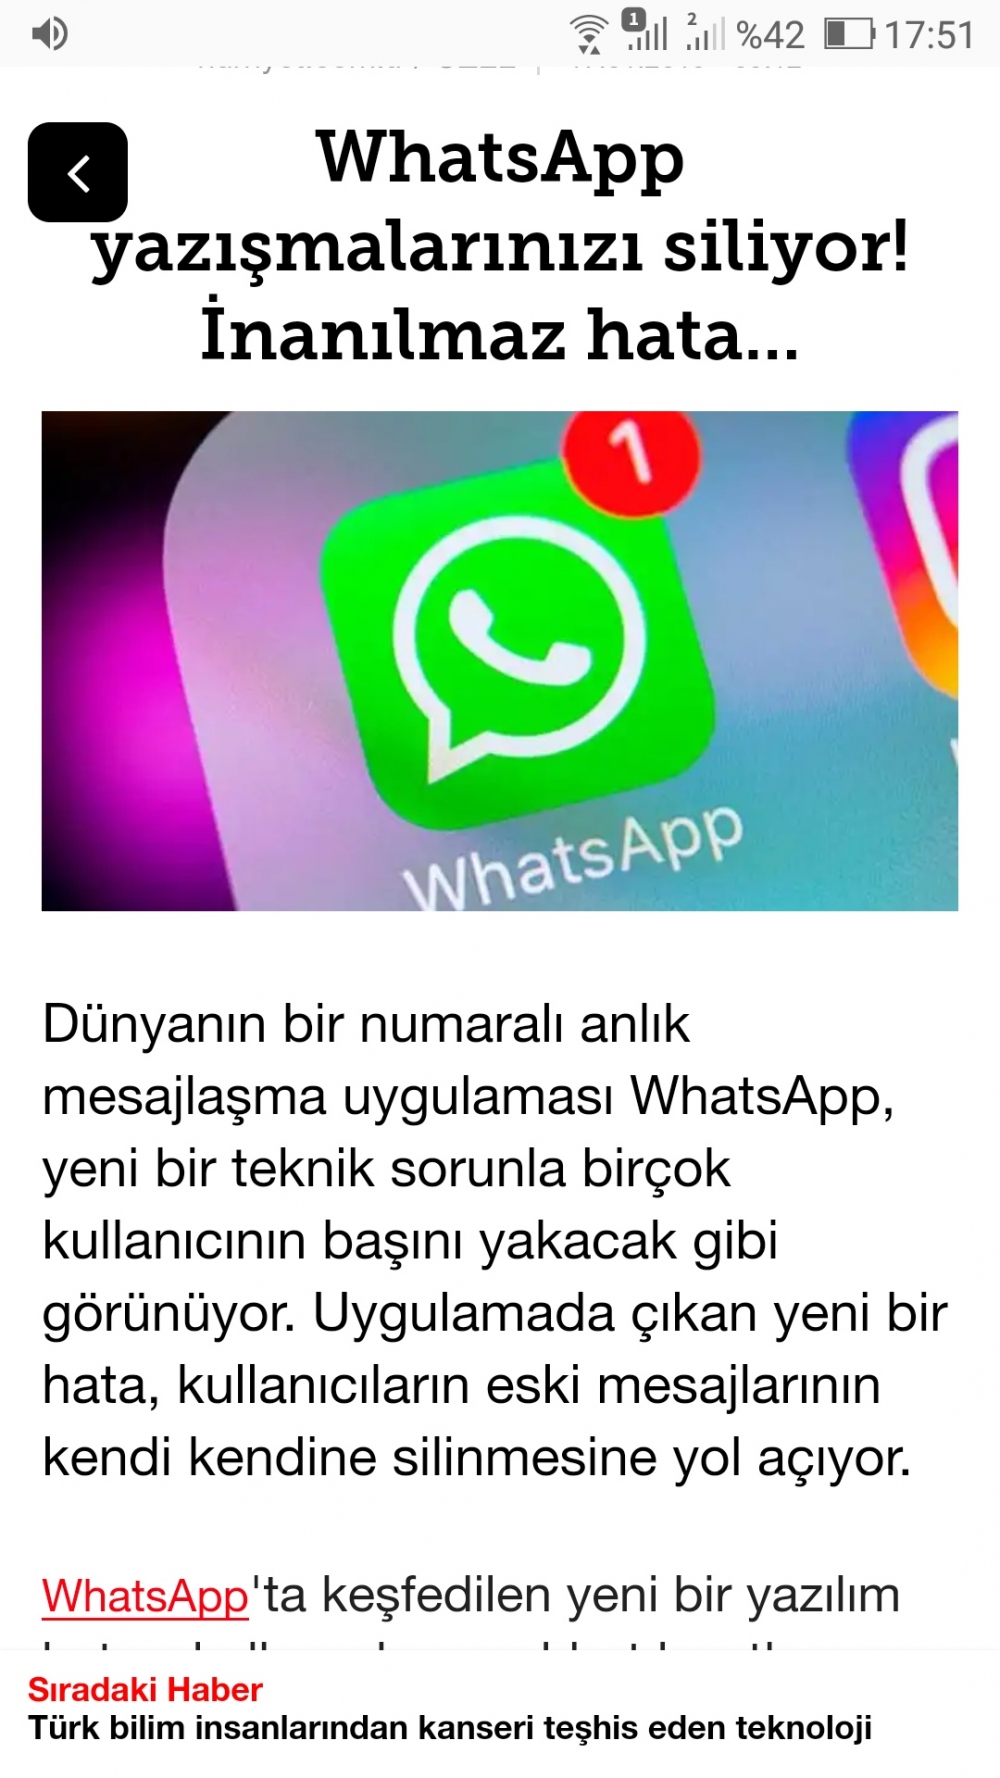 WhatsApp yazışmalarımızı siliyor mu?